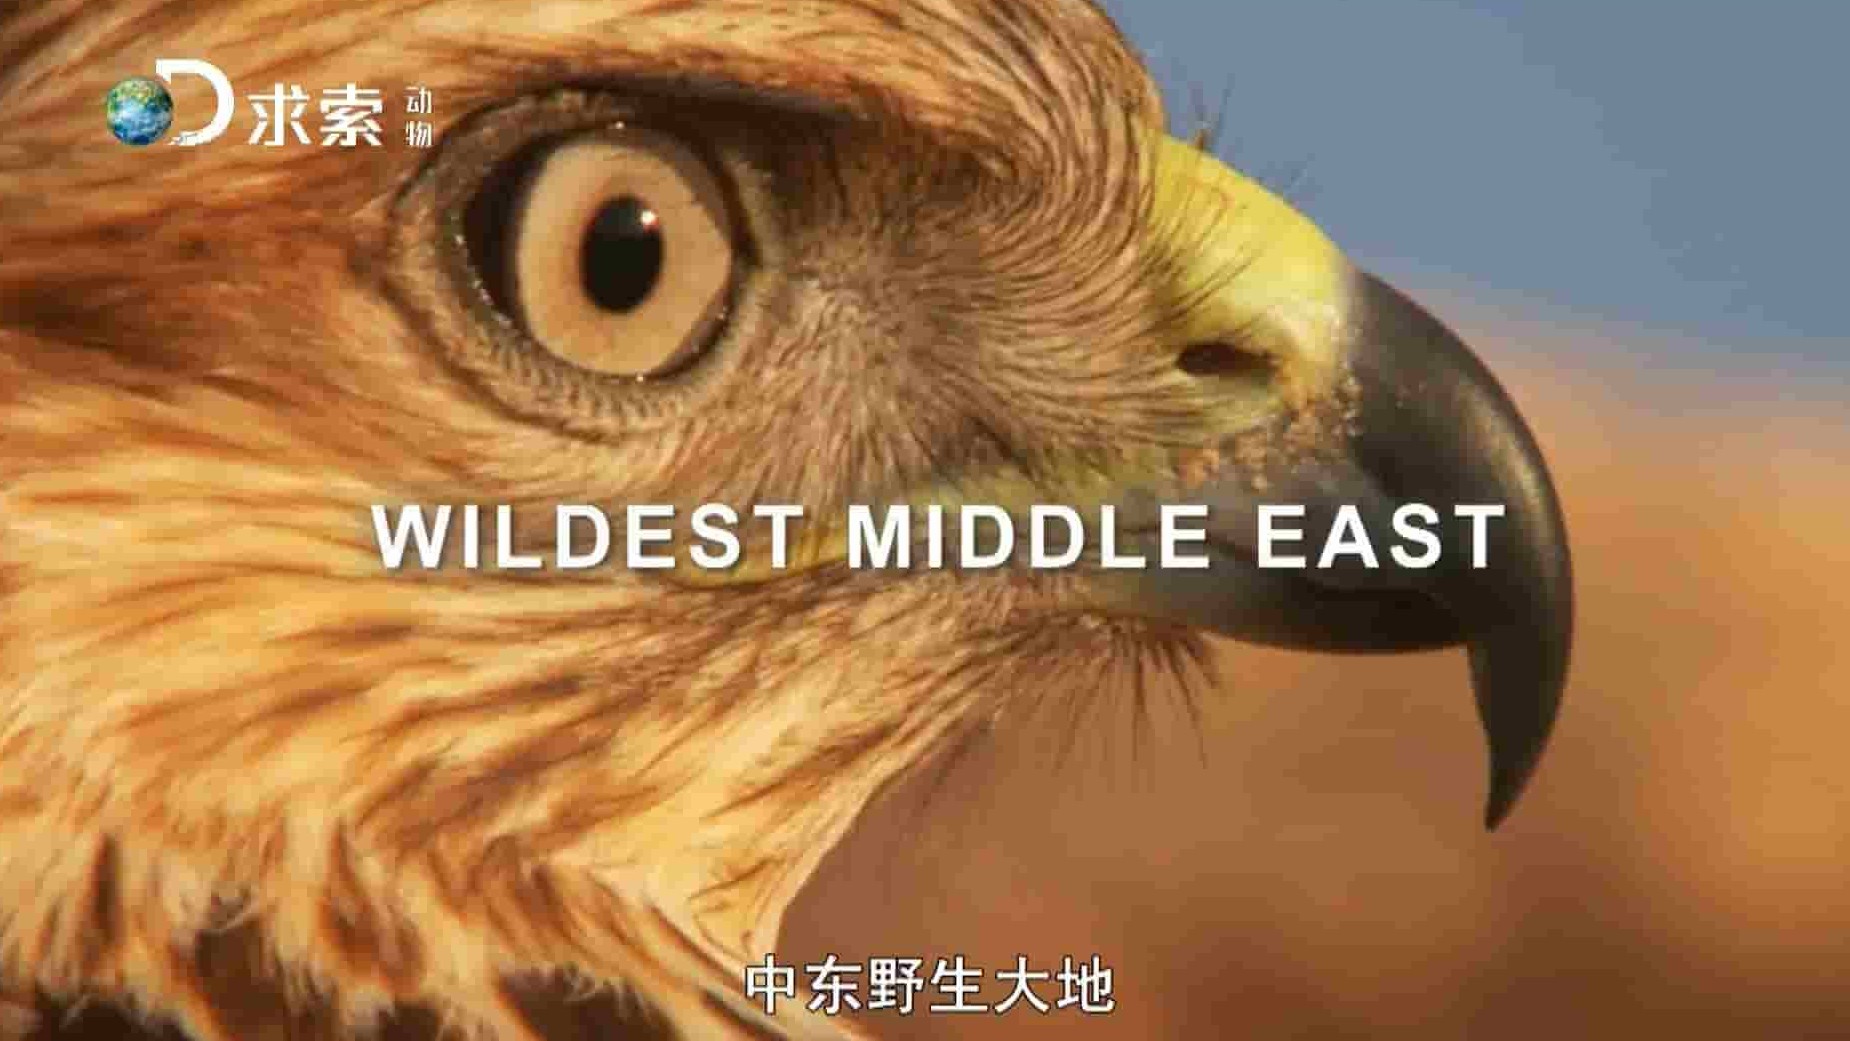 美国纪录片/动物星球《中东野生大地/野性中東 Wildest Middle East》全5集 英语中字 1080P高清网盘下载